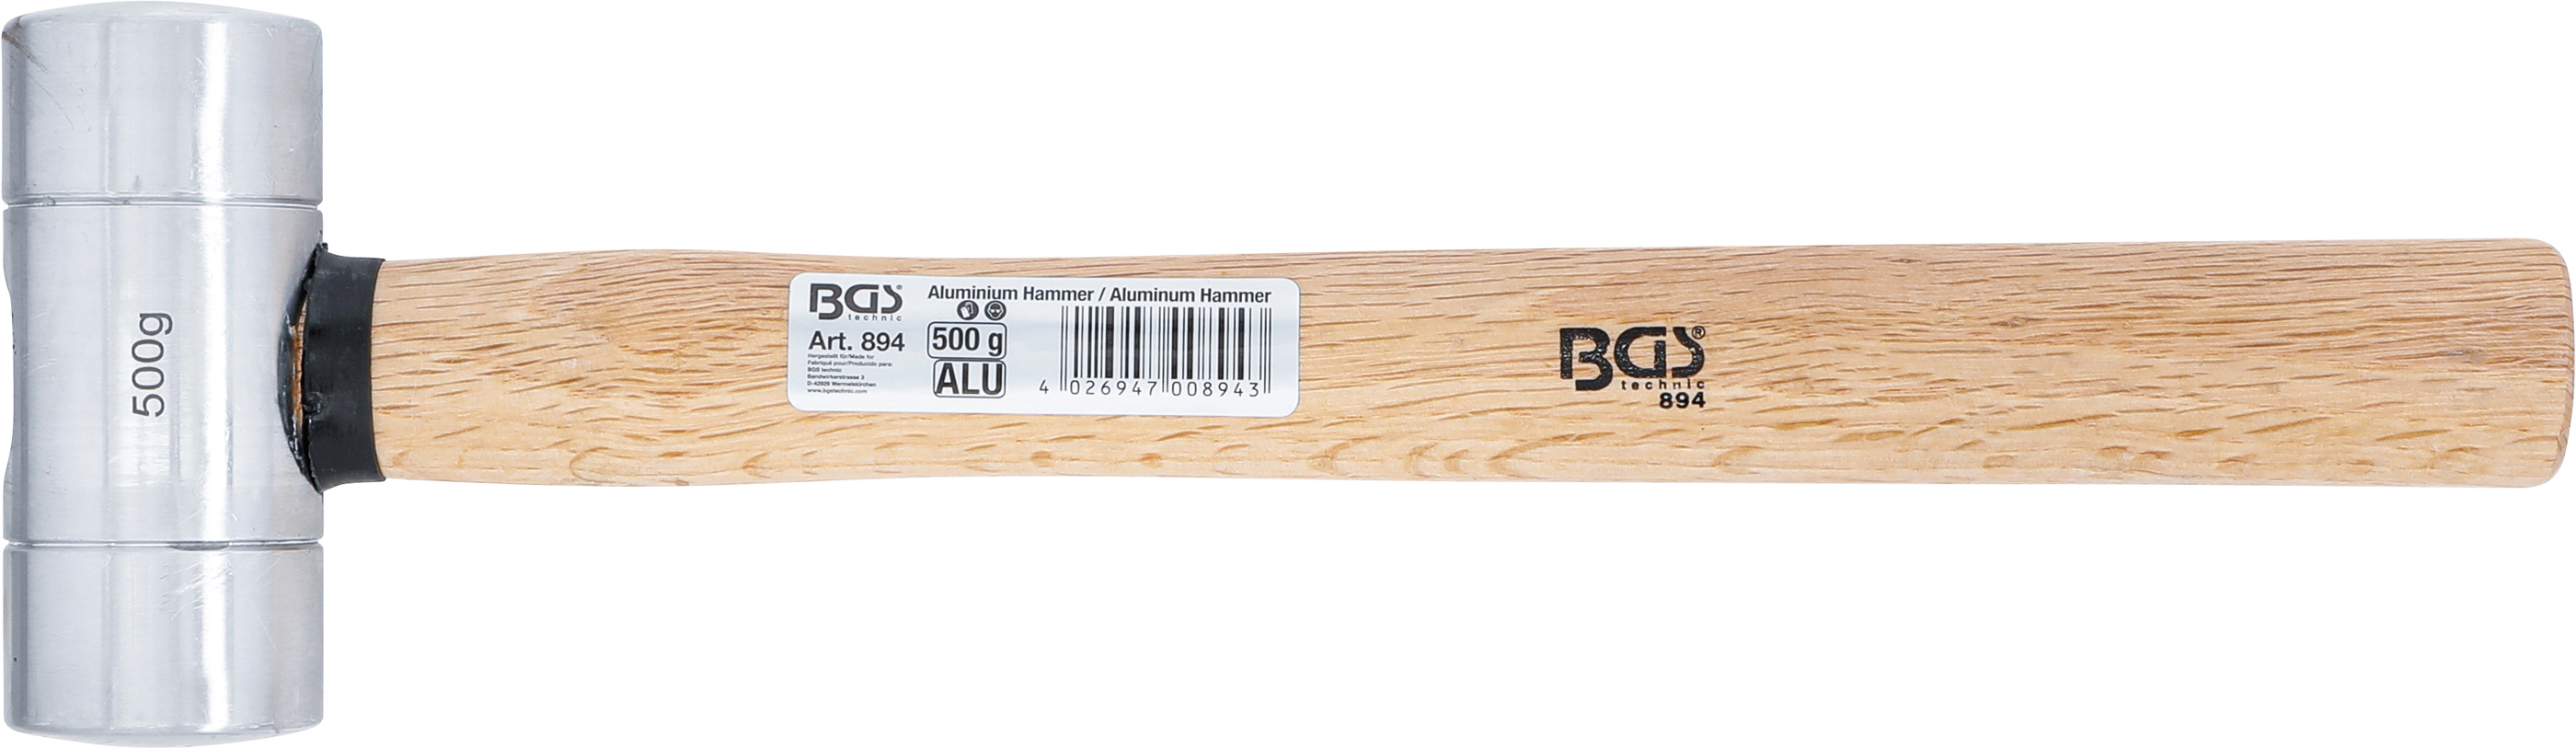 BGS Aluminiumhammer | Ø 45 mm | 500 g